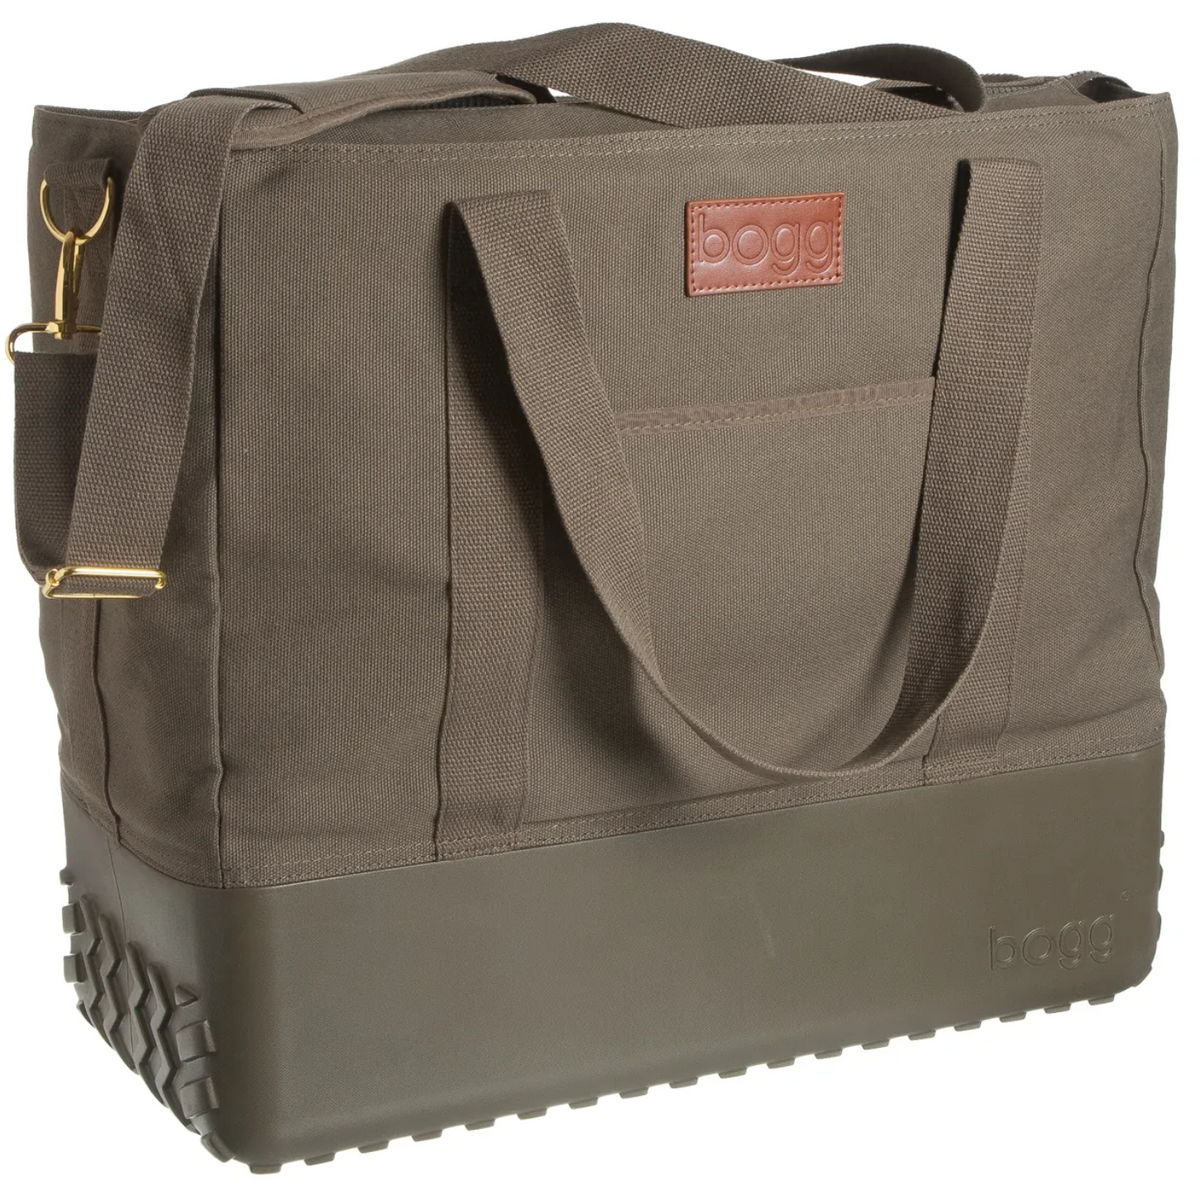 Bogg Bag - Boatbag Cover